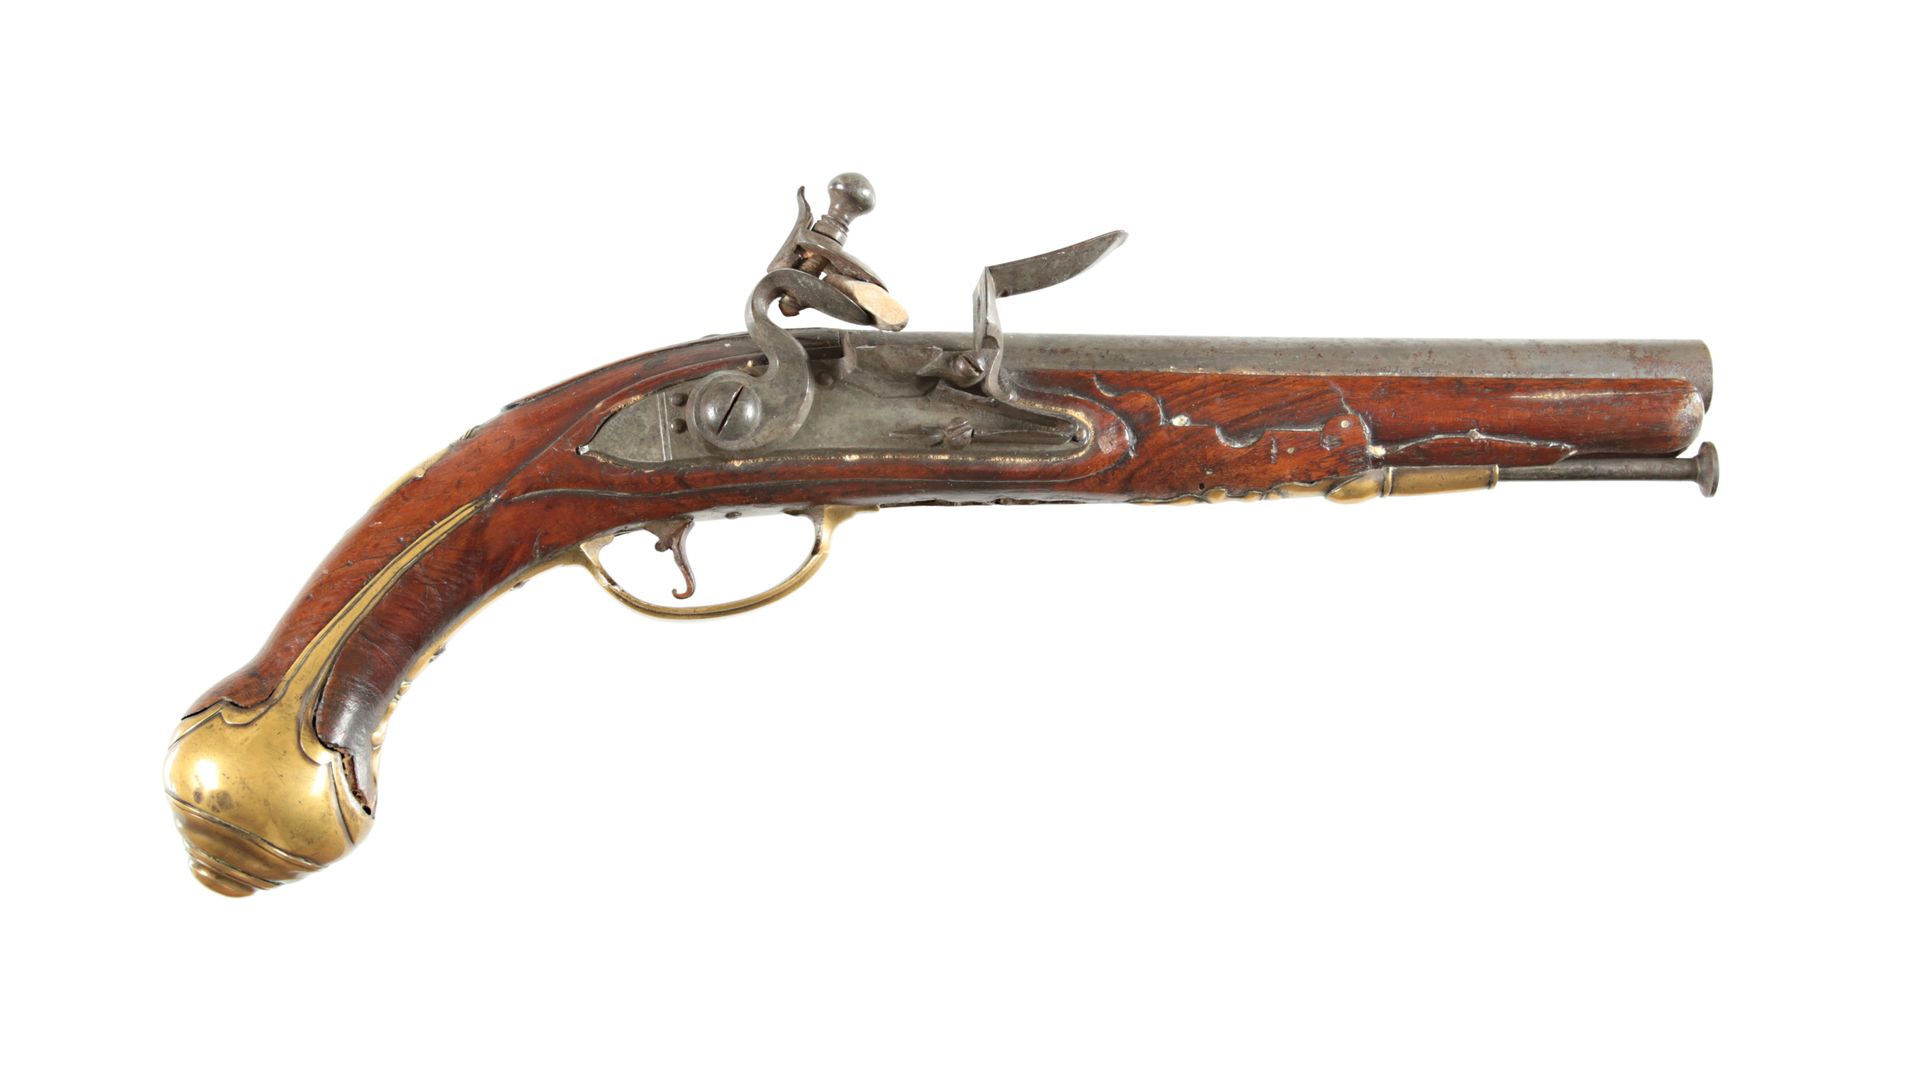 An British Flintlock Pistol, circa 1720 Pistola británica de chispa, hacia 1720
&hellip;